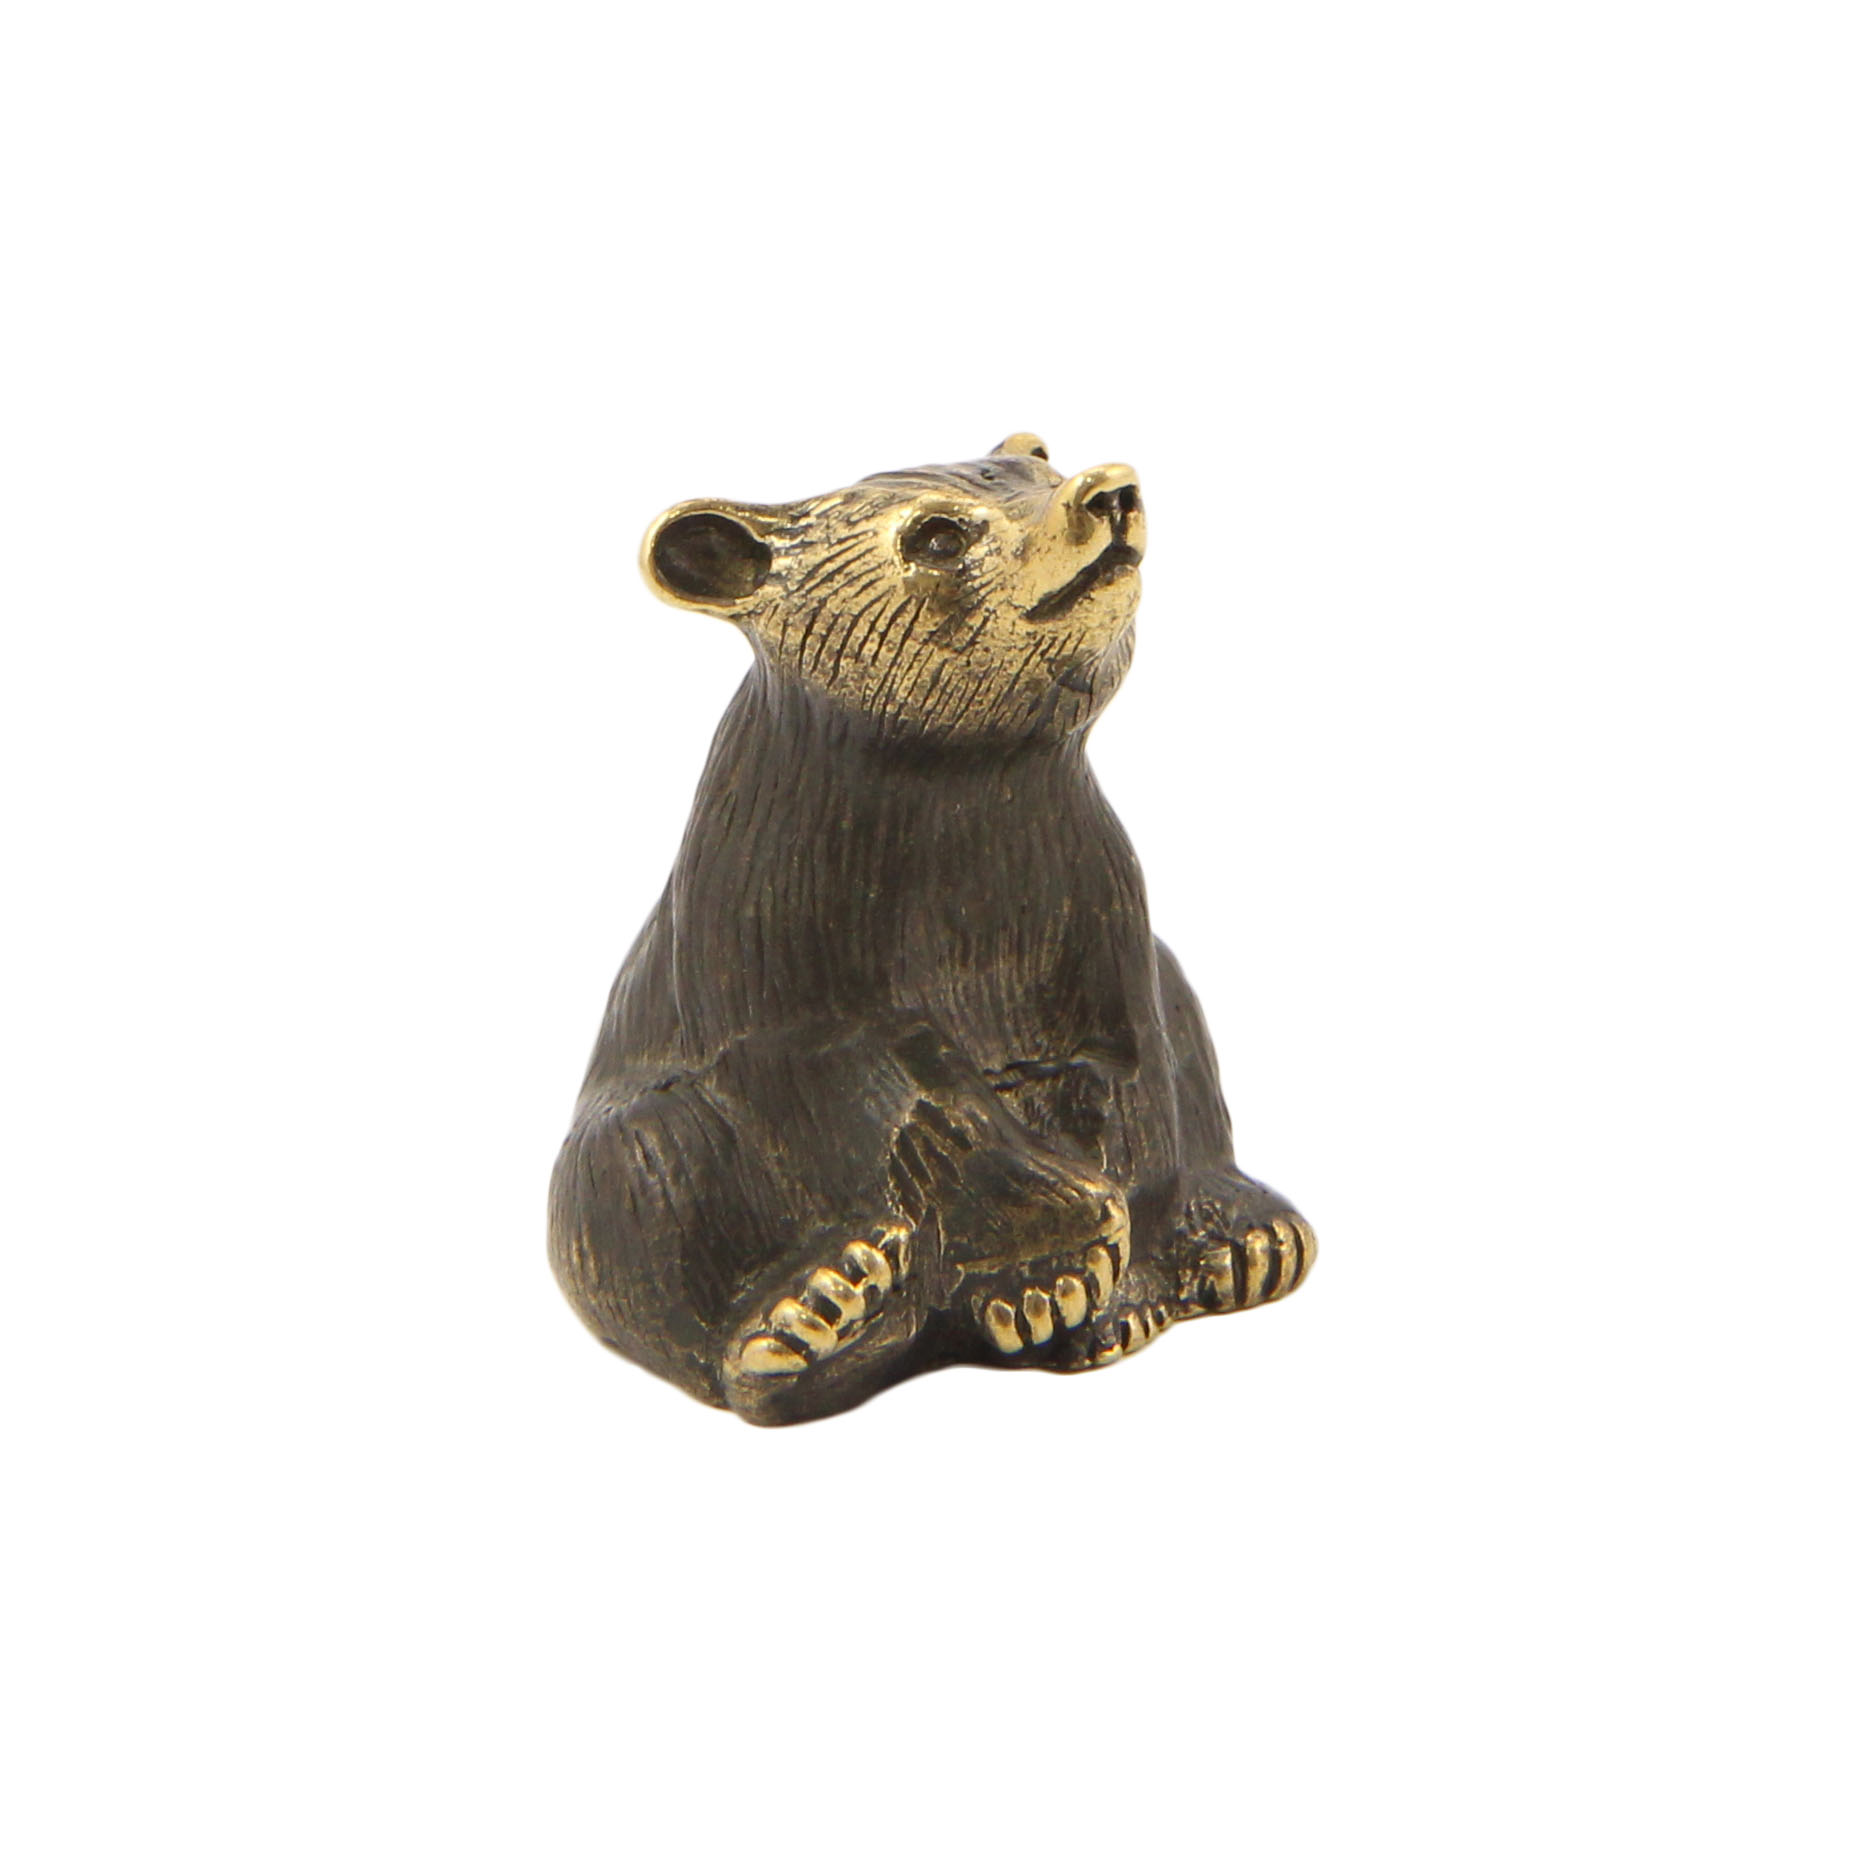 Бронзовый сувенир медведь сидячийФото 15436-06.jpg